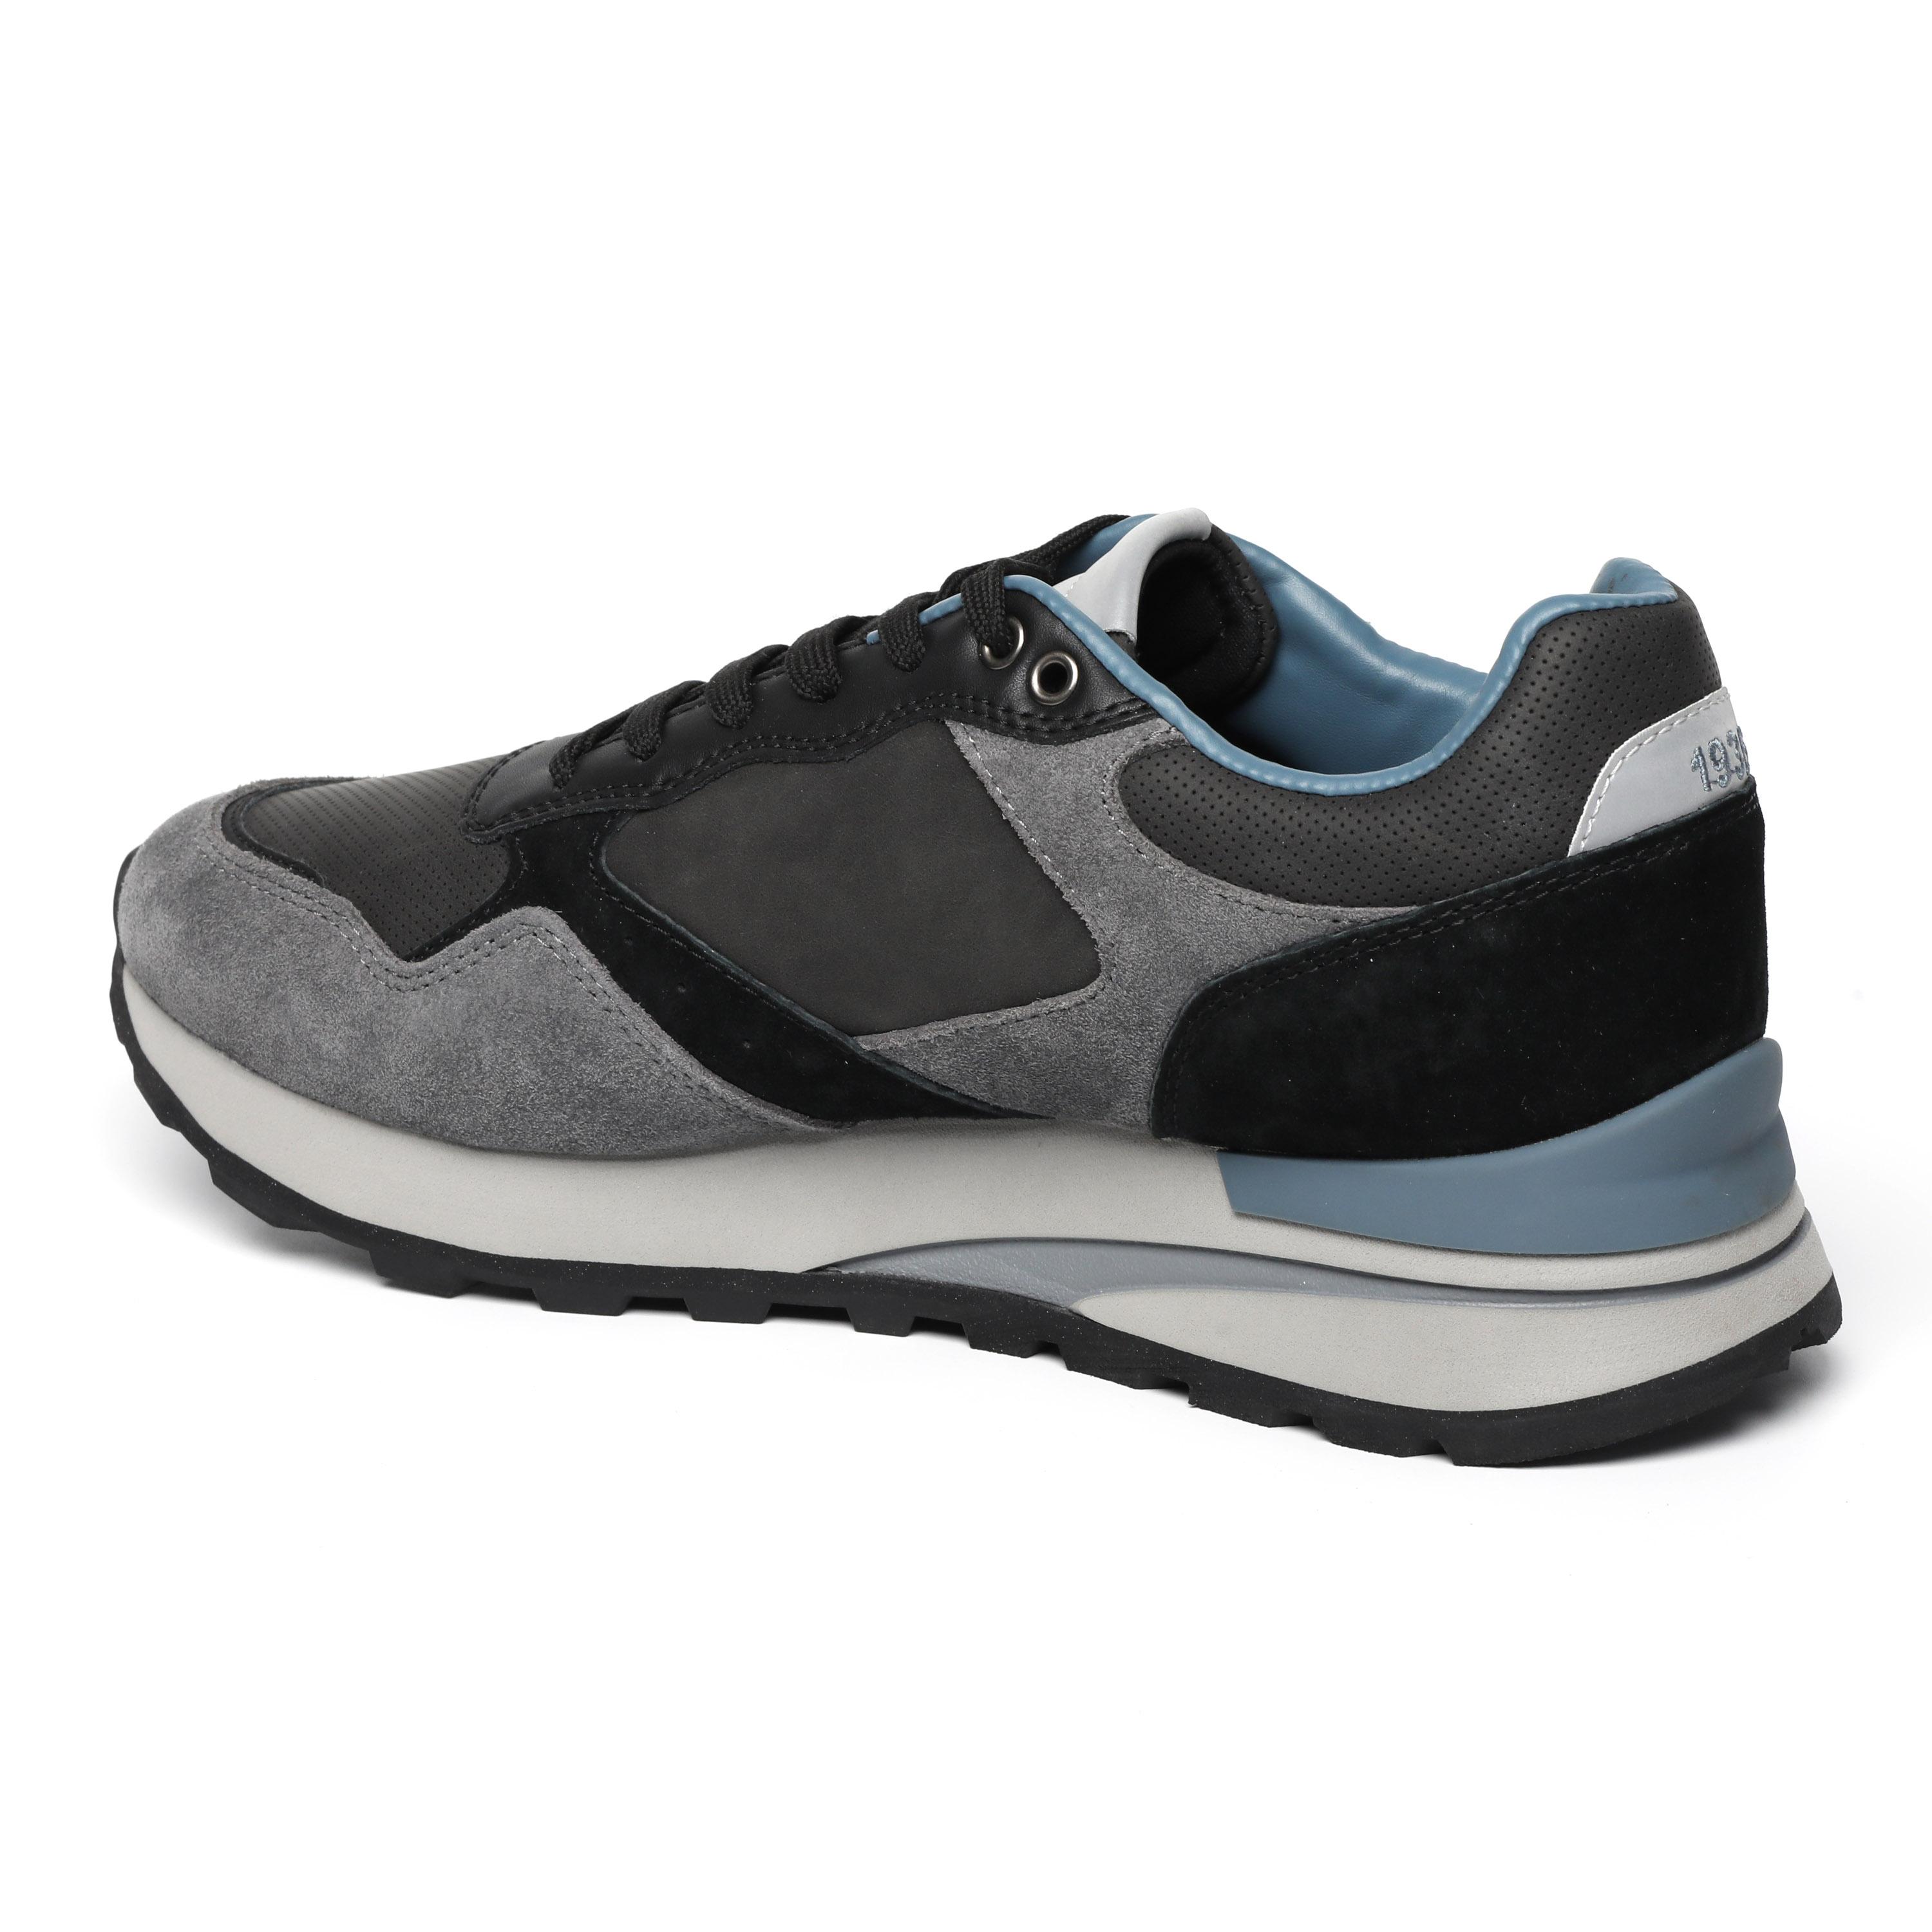 Мужские кроссовки Blauer, серые, цвет серый, размер 43 - фото 3